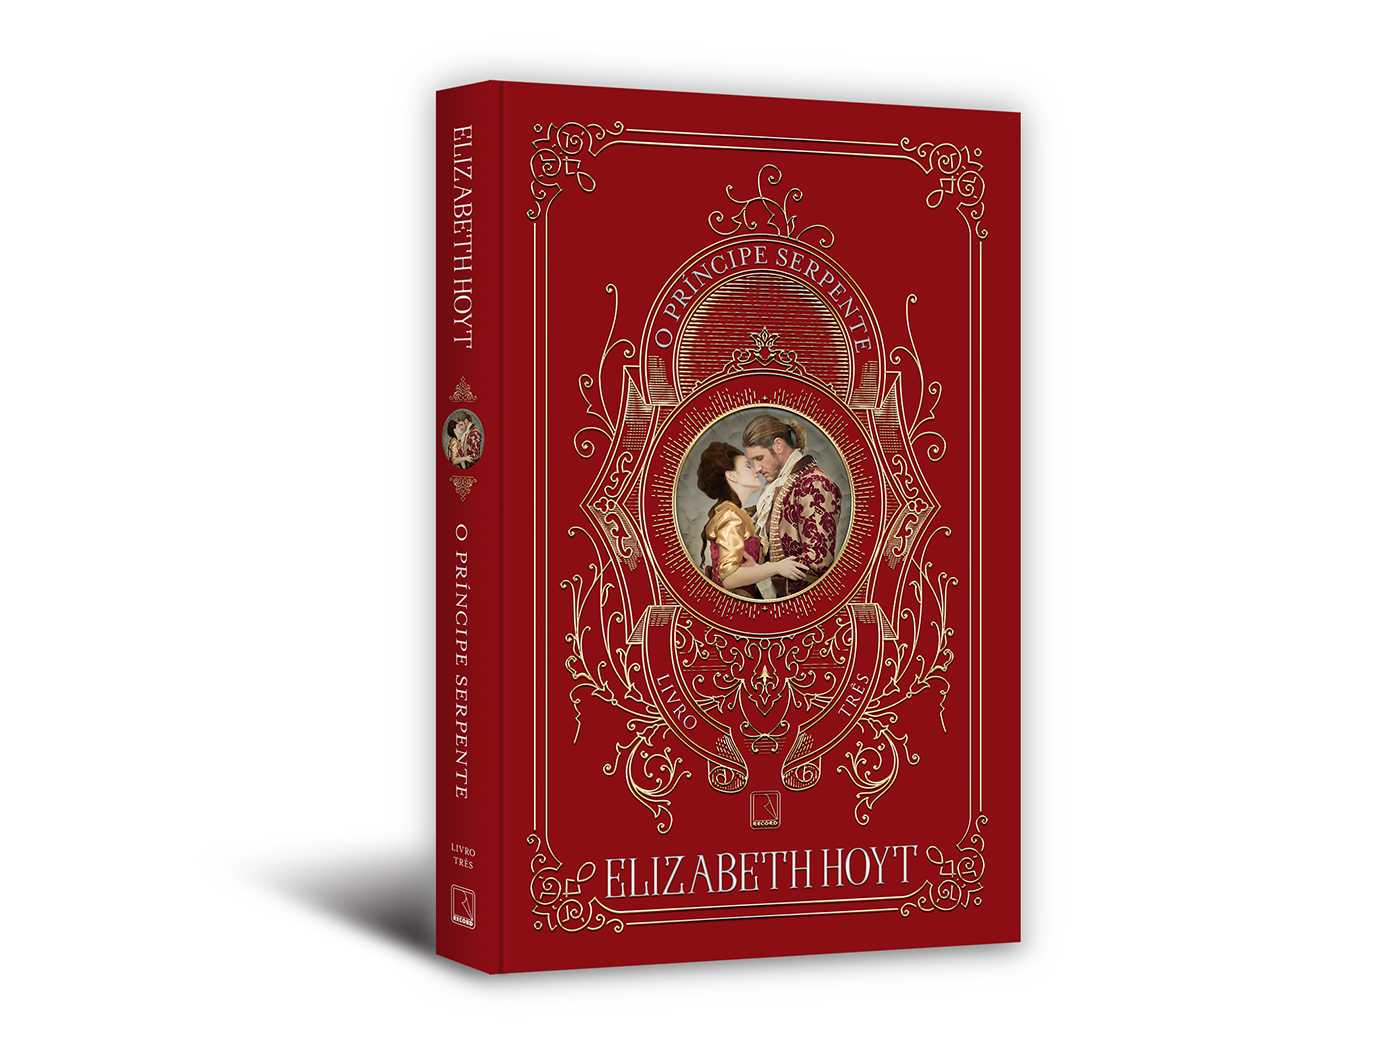 cover book series elizabeth hoyt editora record o príncipe corvo o príncipe leopardo o príncipe serpente Livro Capa